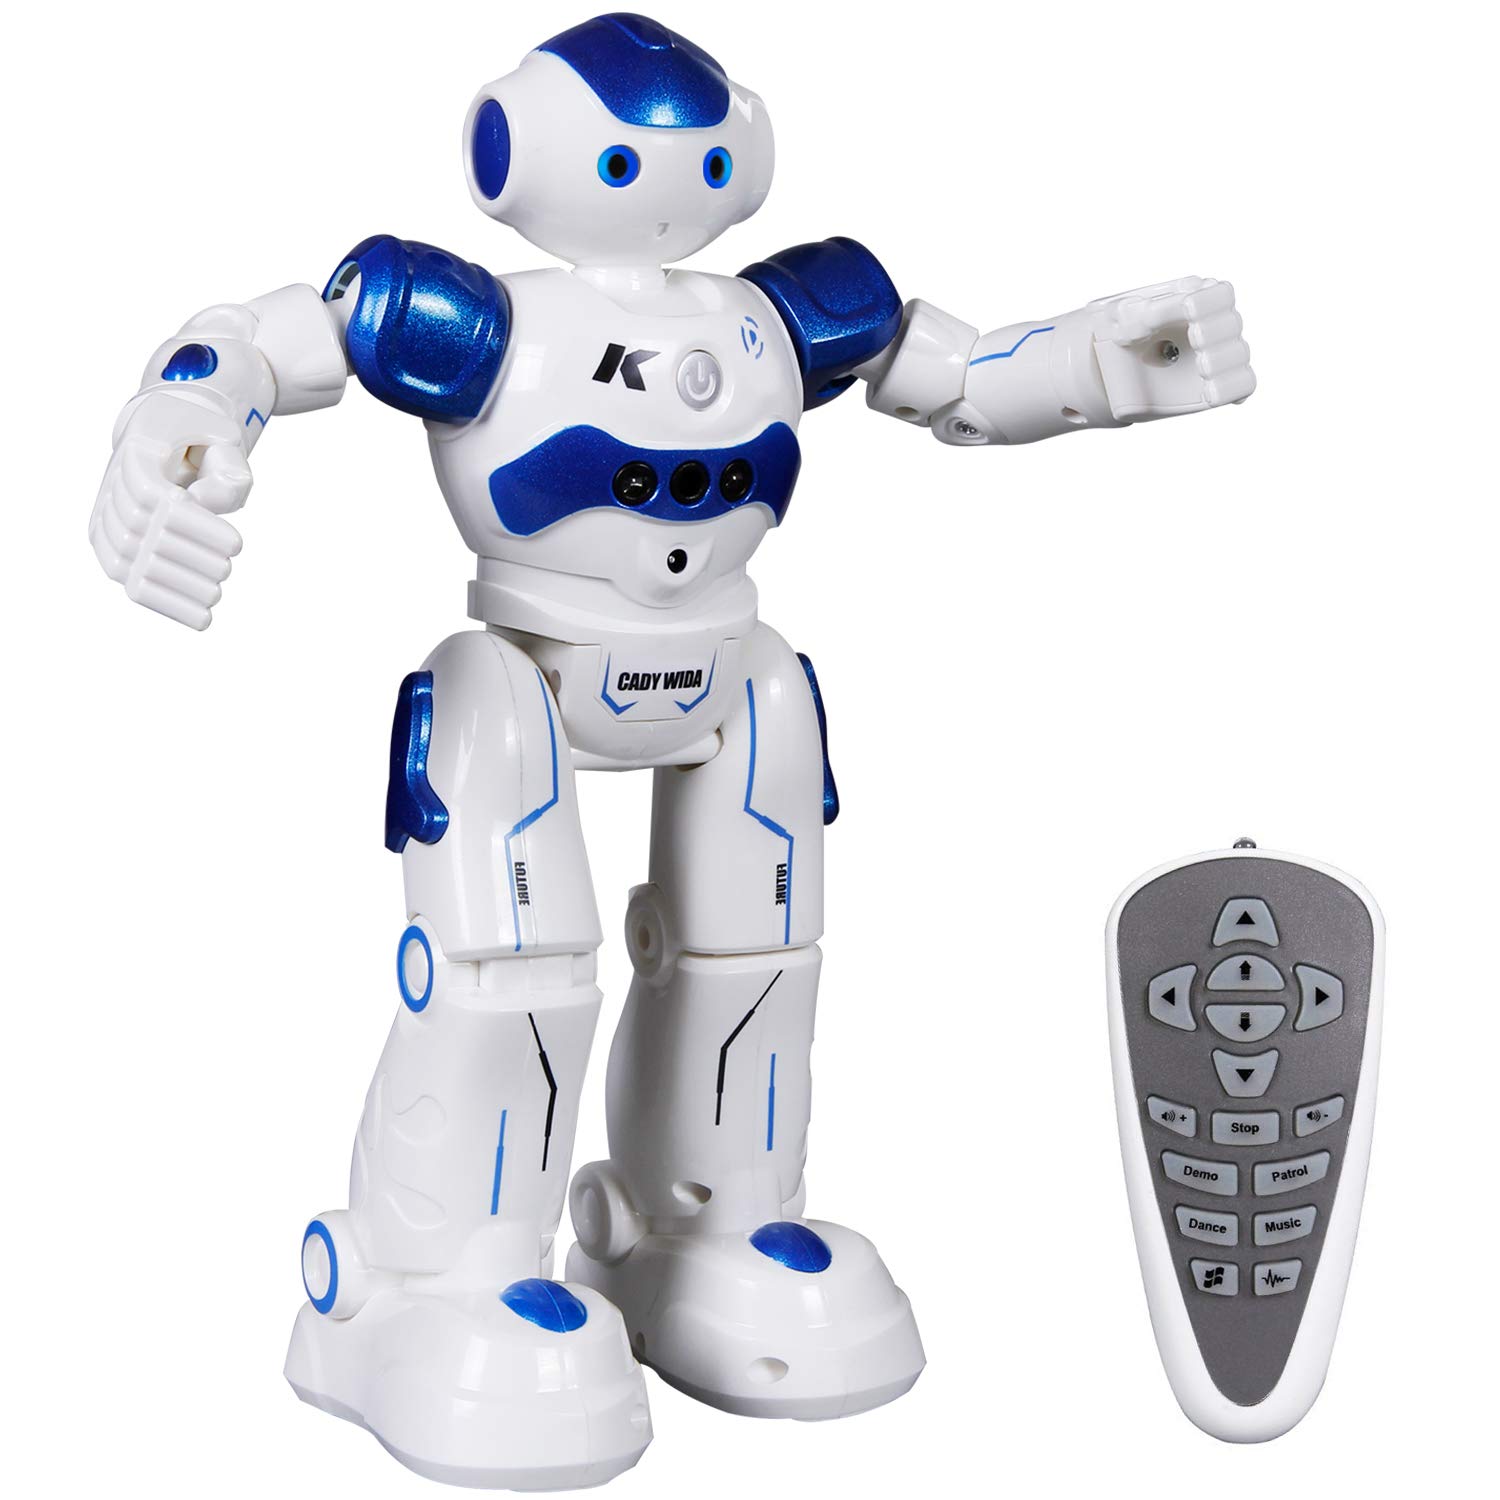 Kinderspielzeug ferngesteuerter Roboter für Kinder Spielset Geschenk weiß blau 